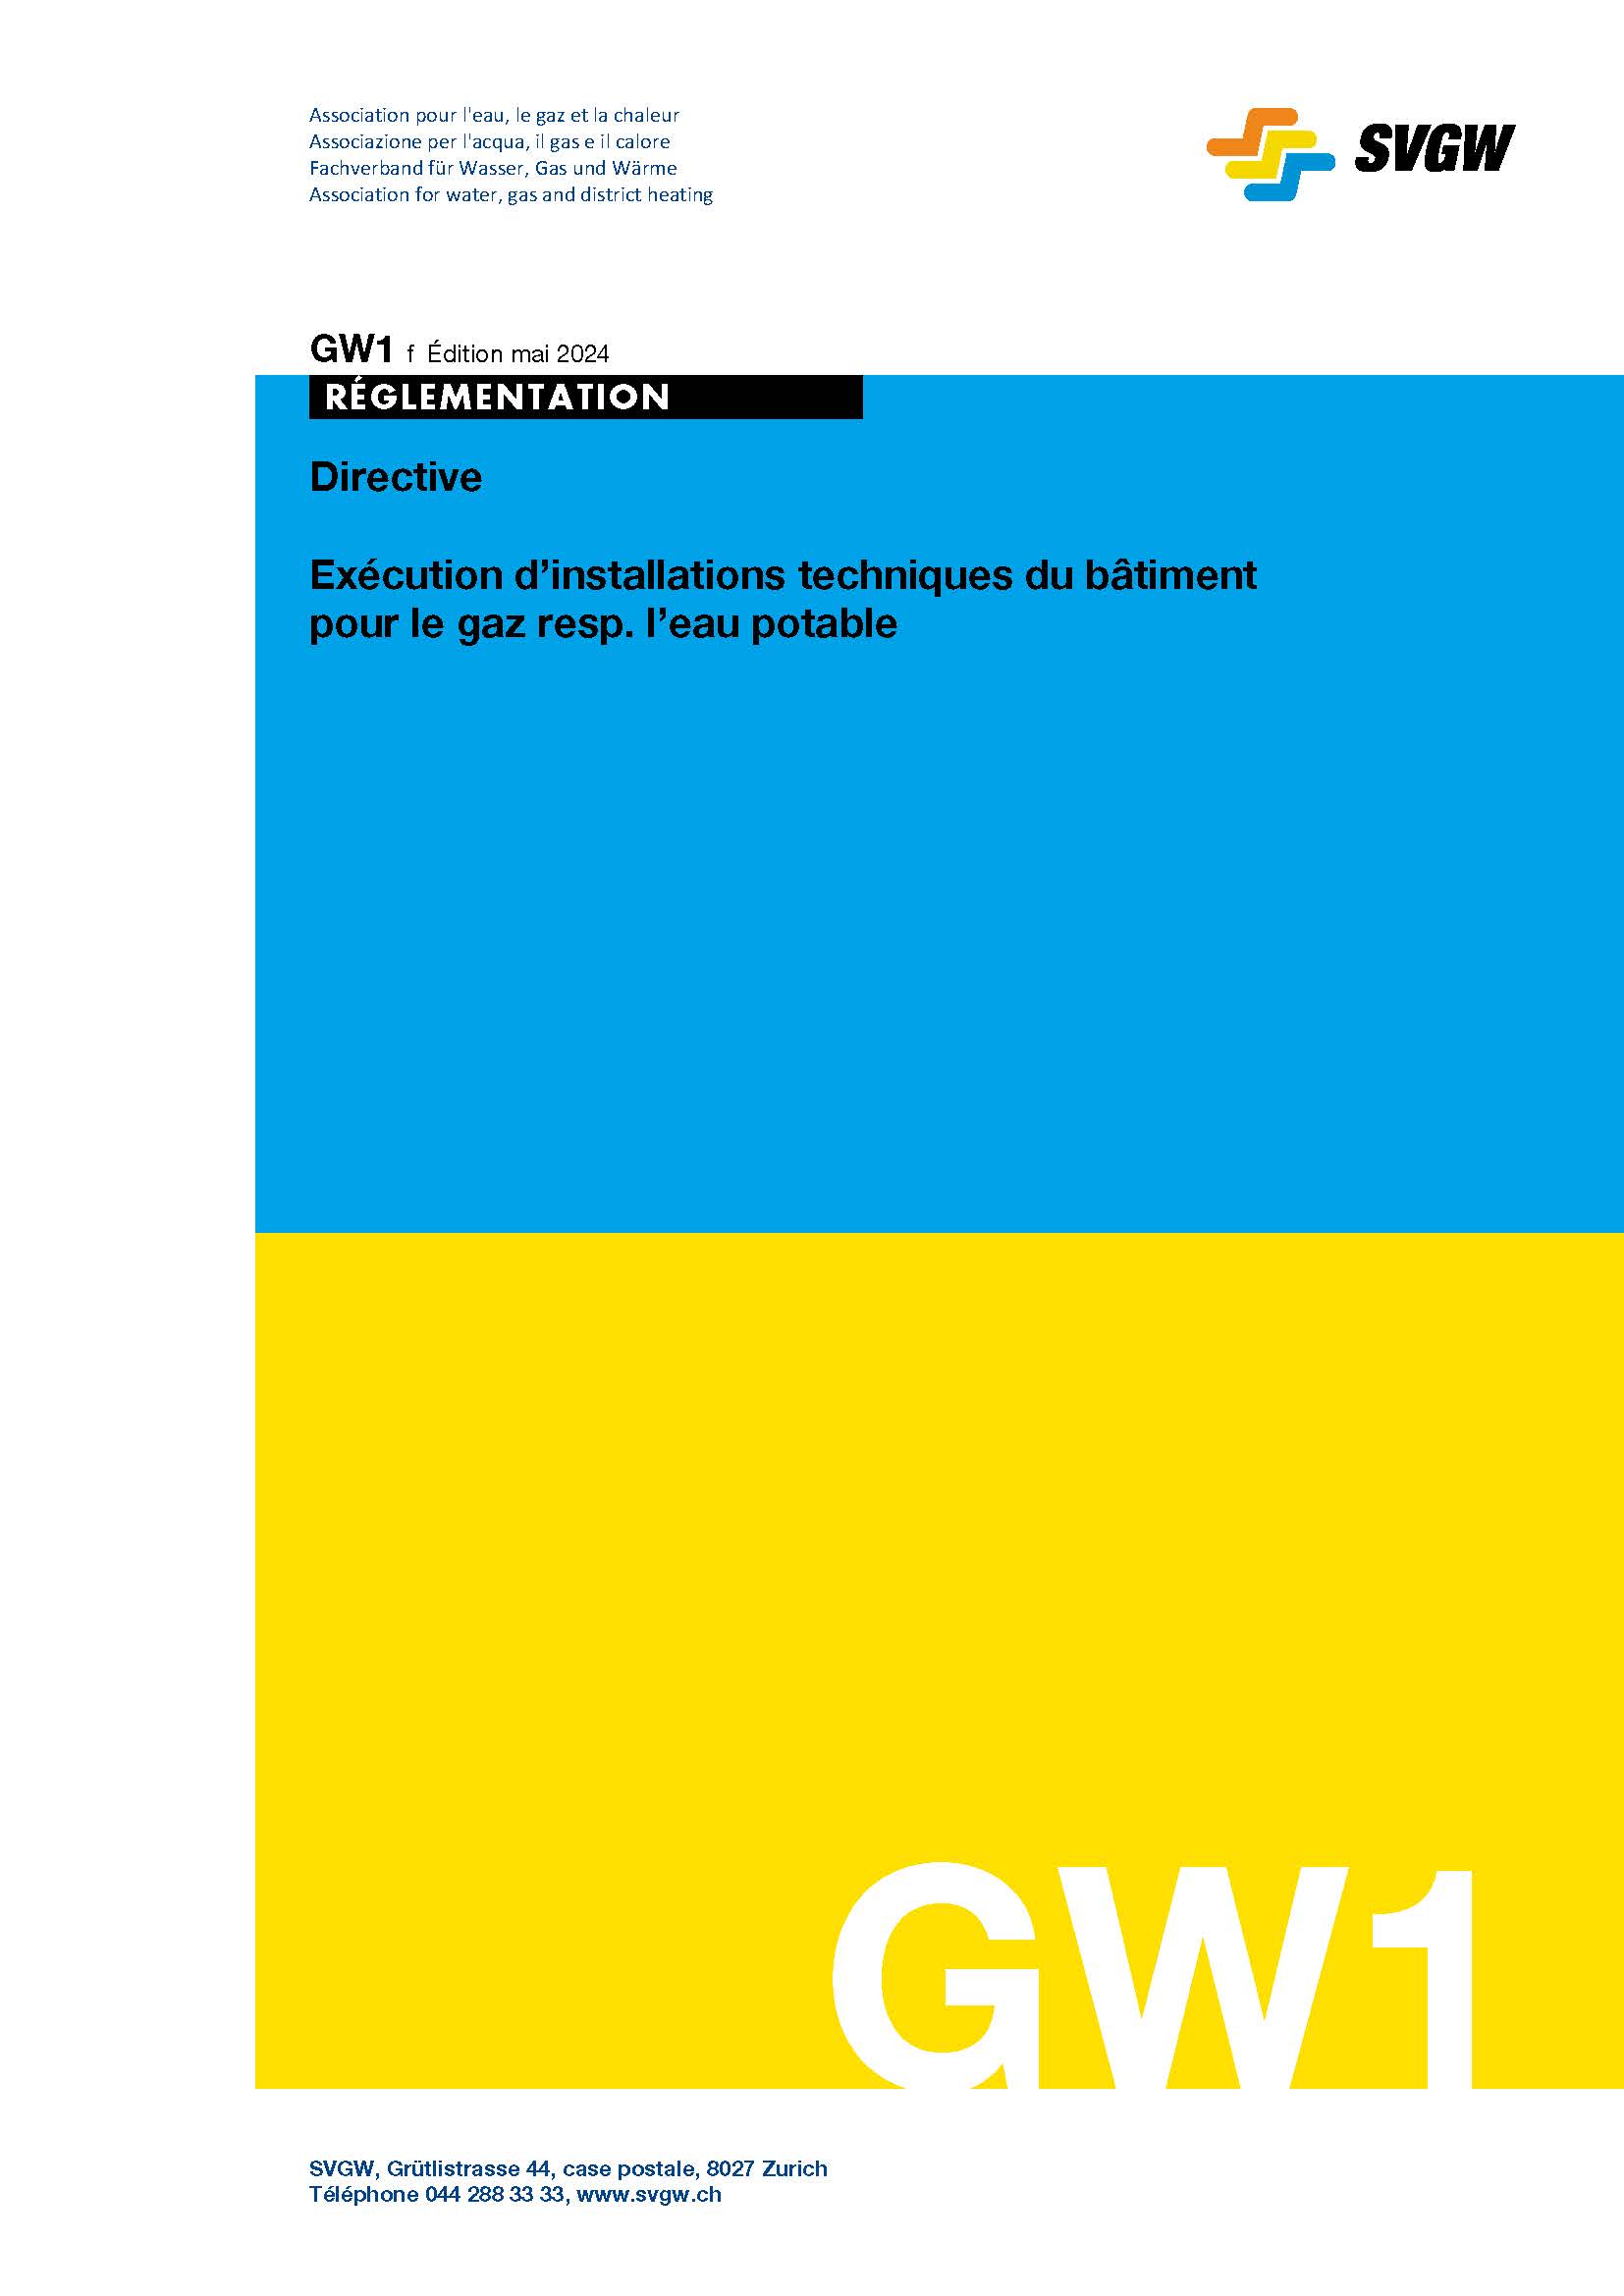 GW1 f Directive; Exécution d' installations techniques du bâtiment pour le gas resp. l'eau potable